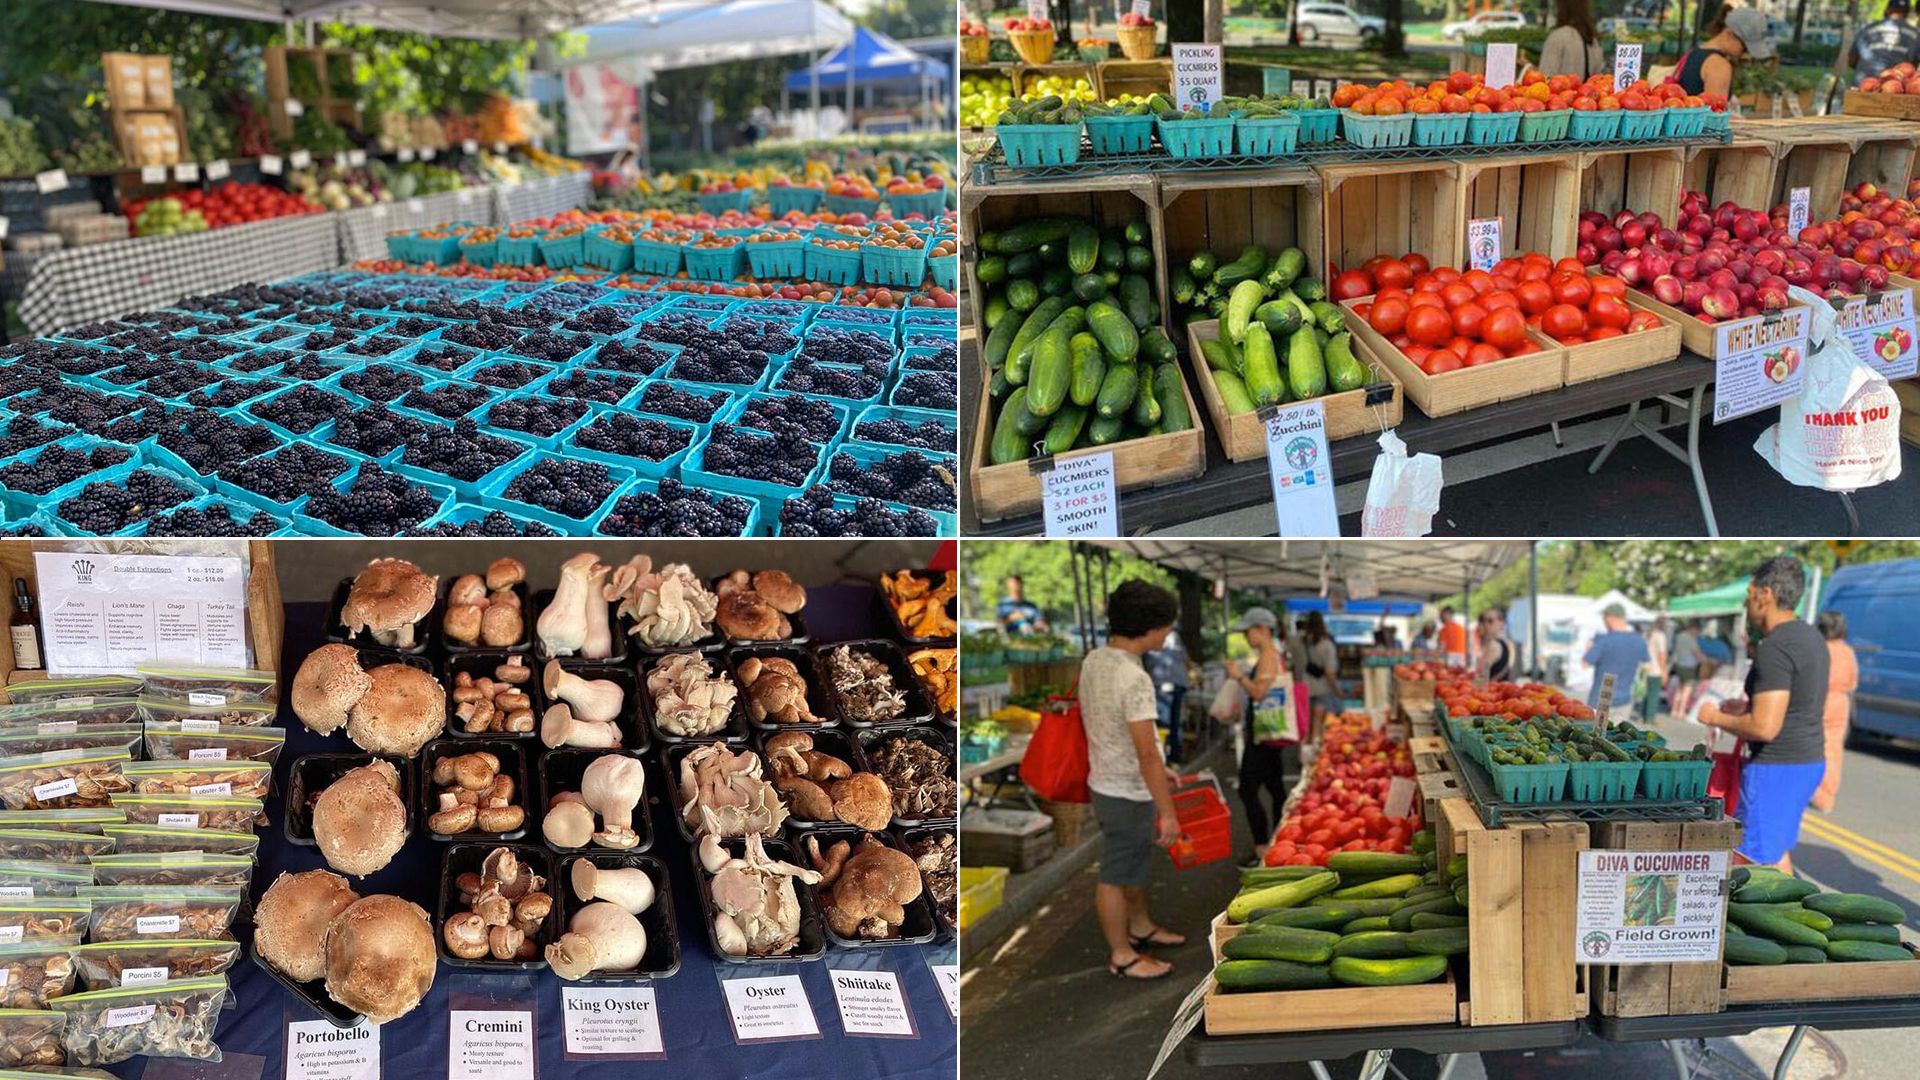 Events in D.C. this weekend Bloomingdale Farmers Market, Slamtastic